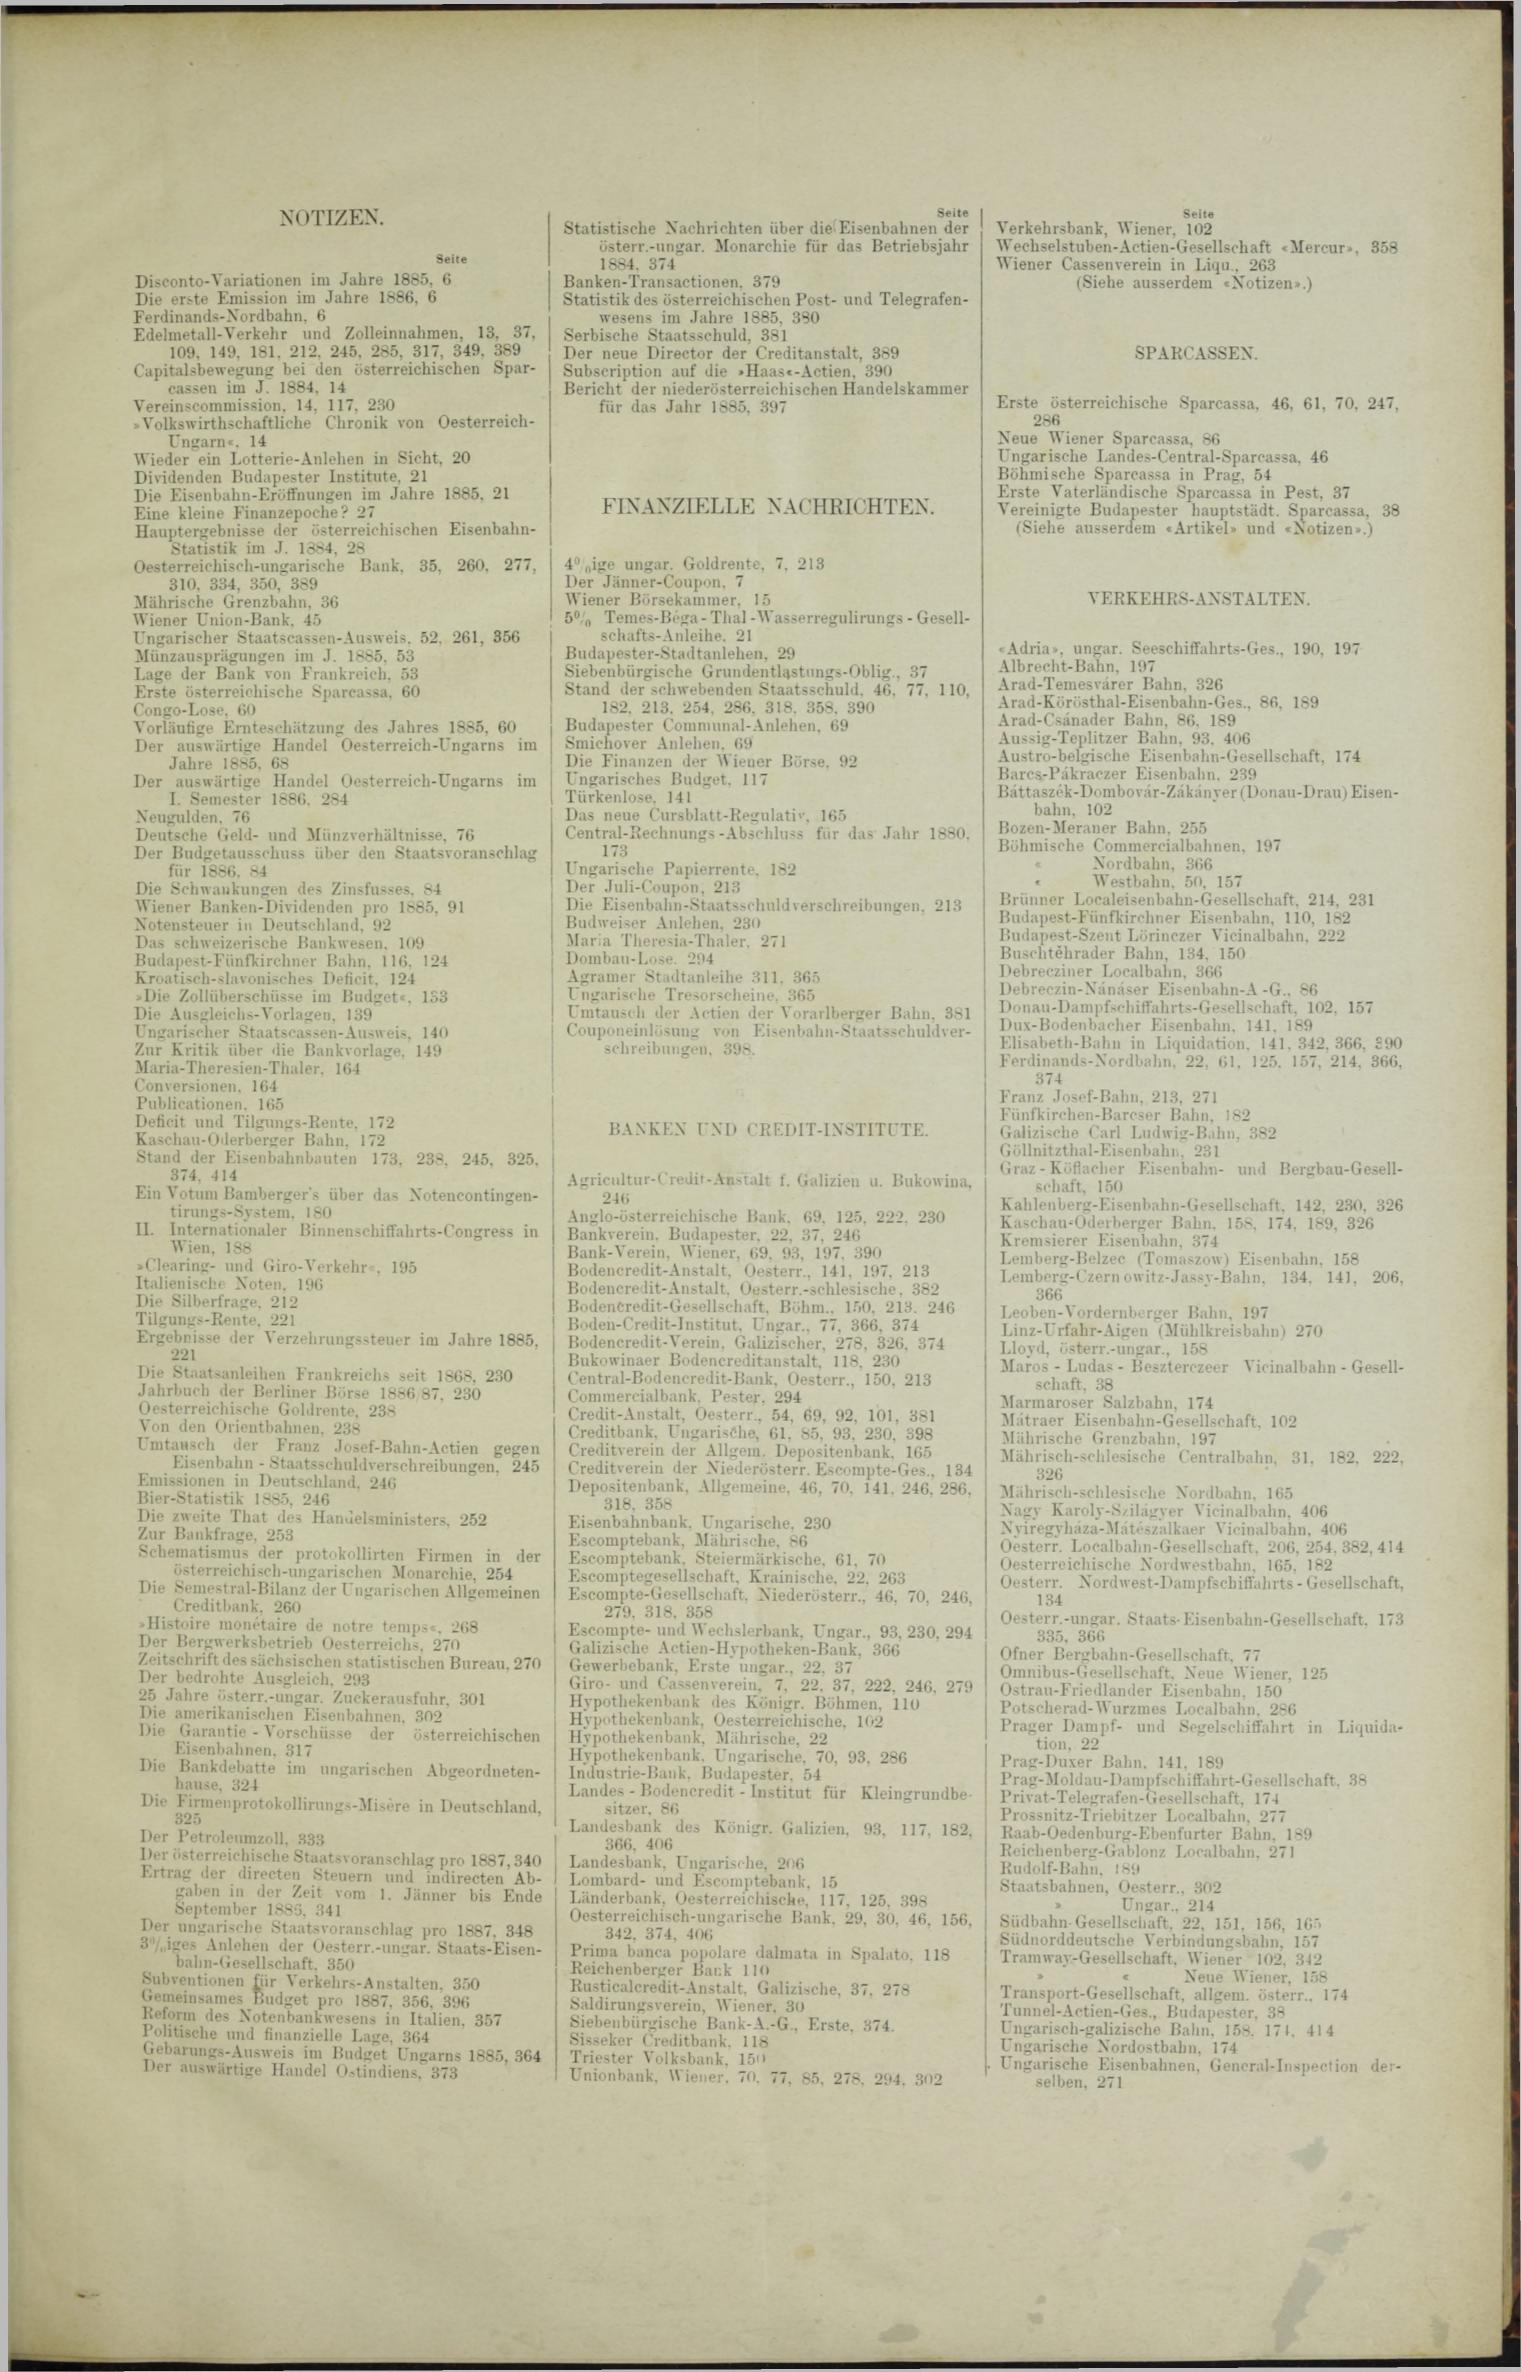 Der Tresor 11.11.1886 - Seite 11